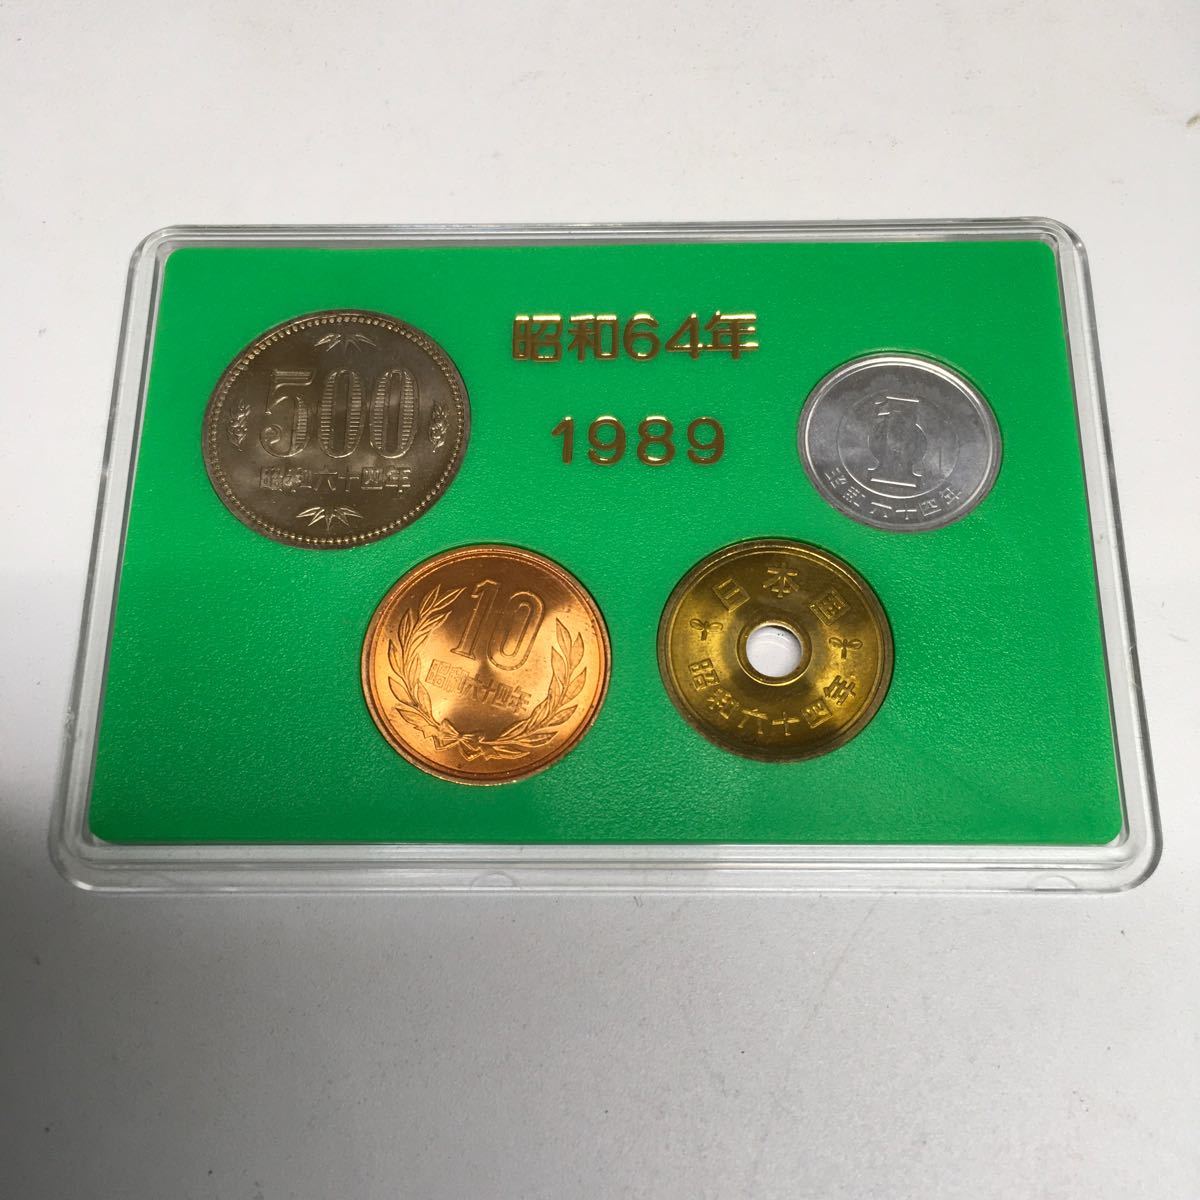 【希少】昭和64年 昭和最後発行の貨幣セット 1989年 2個セット 硬貨 日本貨幣 【IK-01135】_画像4